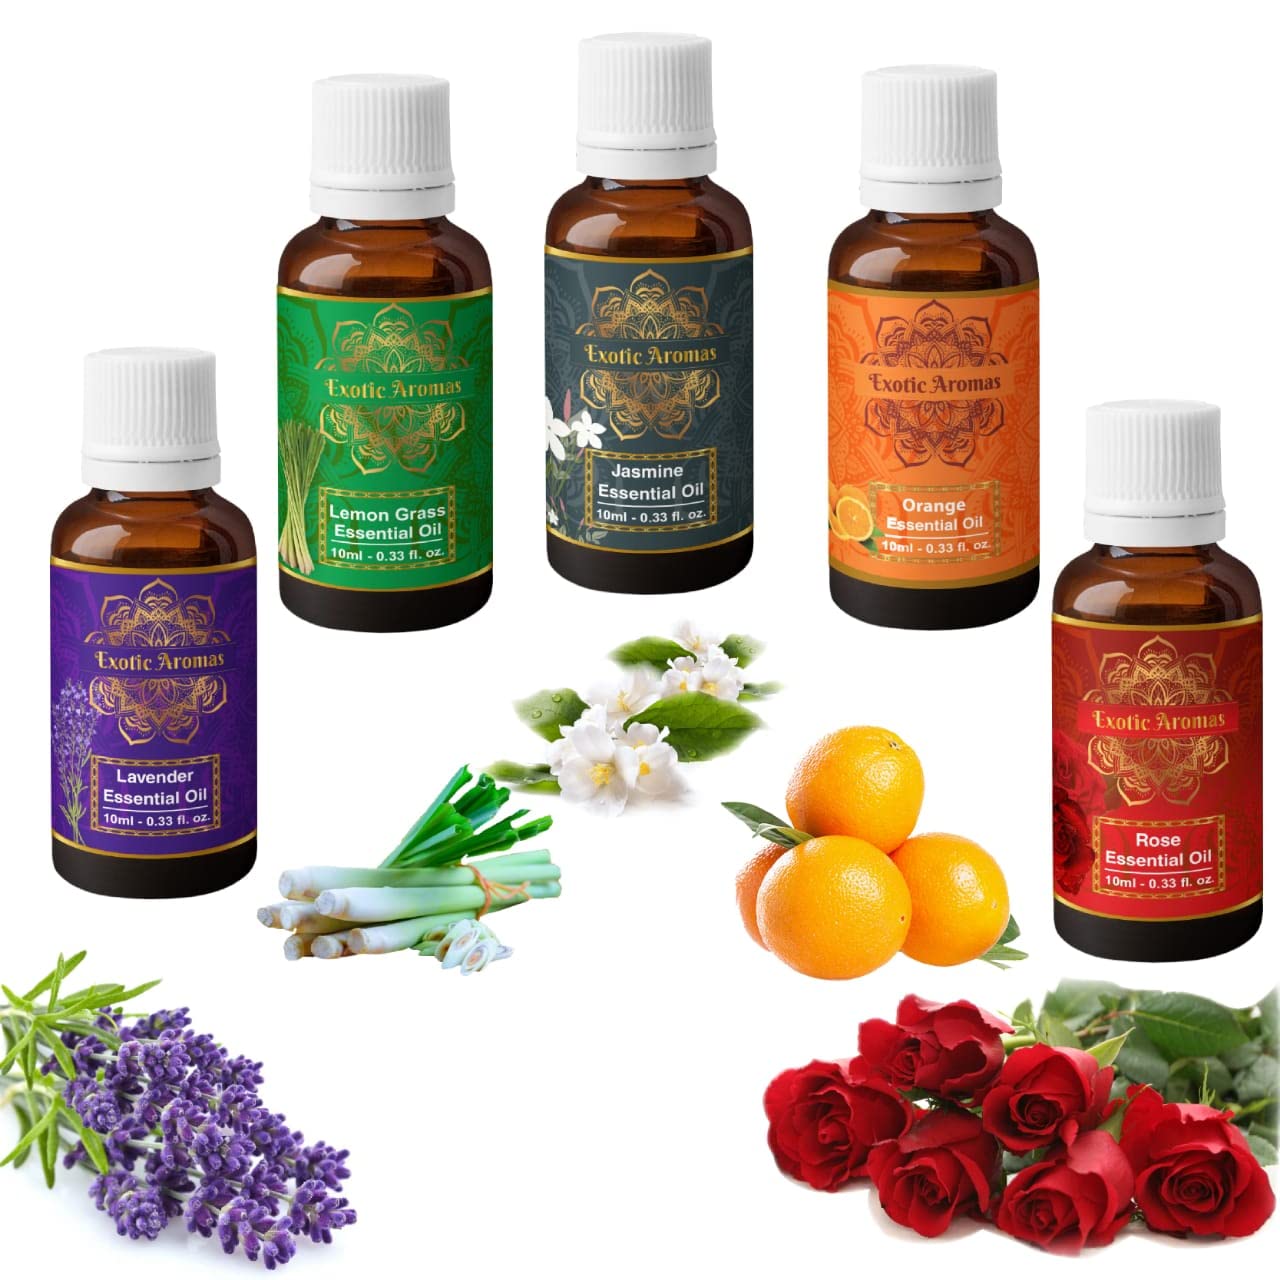 Exotic Aromas Lavender, Lemongrass, Jasmine, Orange, Rose Essential Oil, 10 ML Each, Pack of 5 Oils